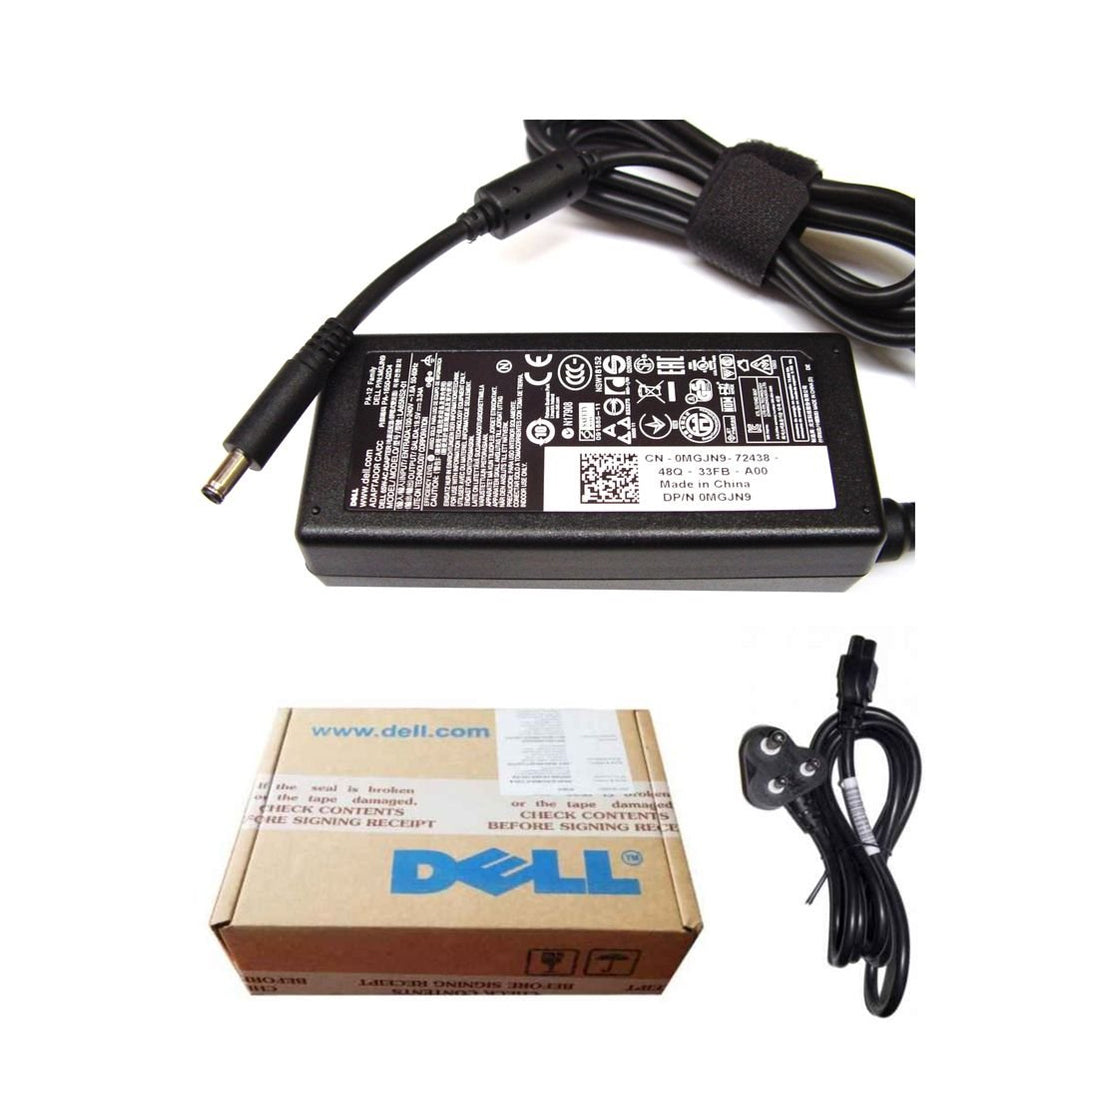 Dell ओरिजिनल 65W 19.5V 4.5mm पिन लैपटॉप चार्जर अडैप्टर Inspiron 15 3576 के लिए पावर कॉर्ड के साथ